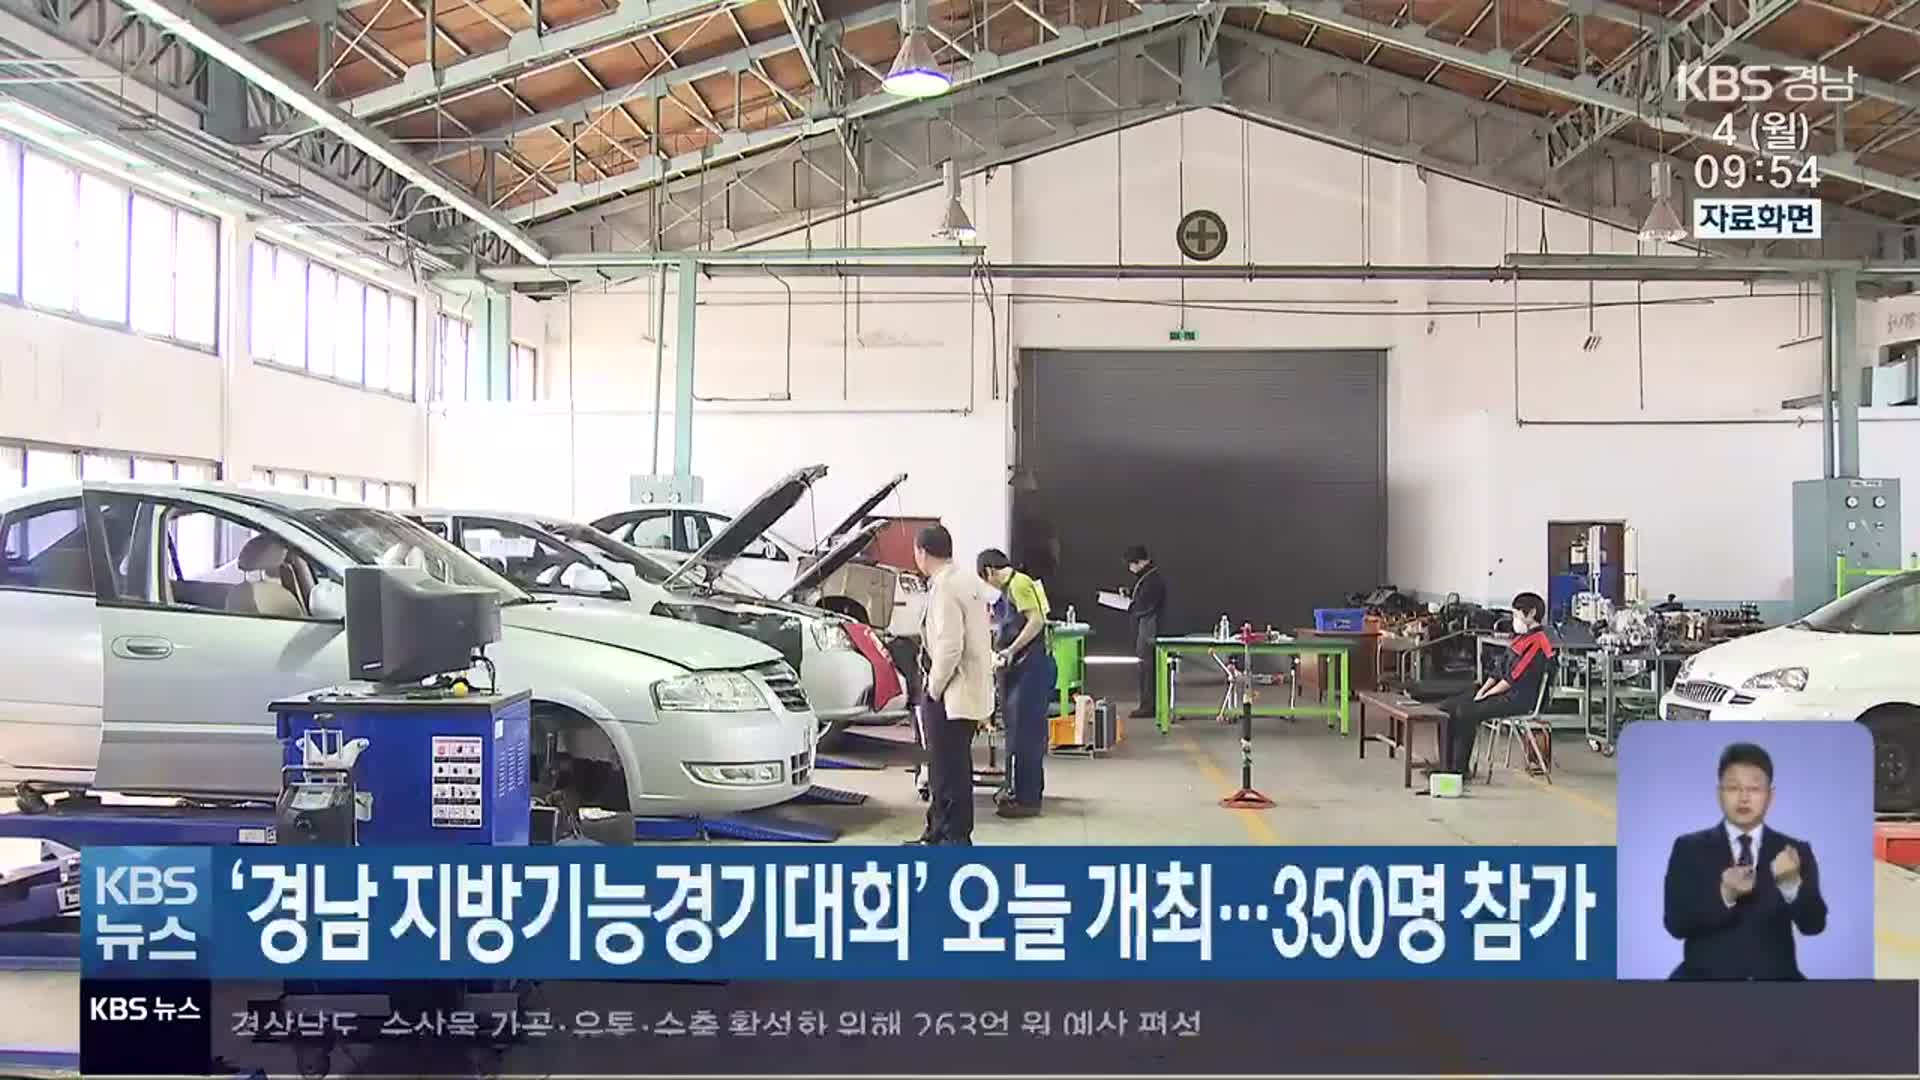 ‘경남 지방기능경기대회’ 오늘 개최…350명 참가